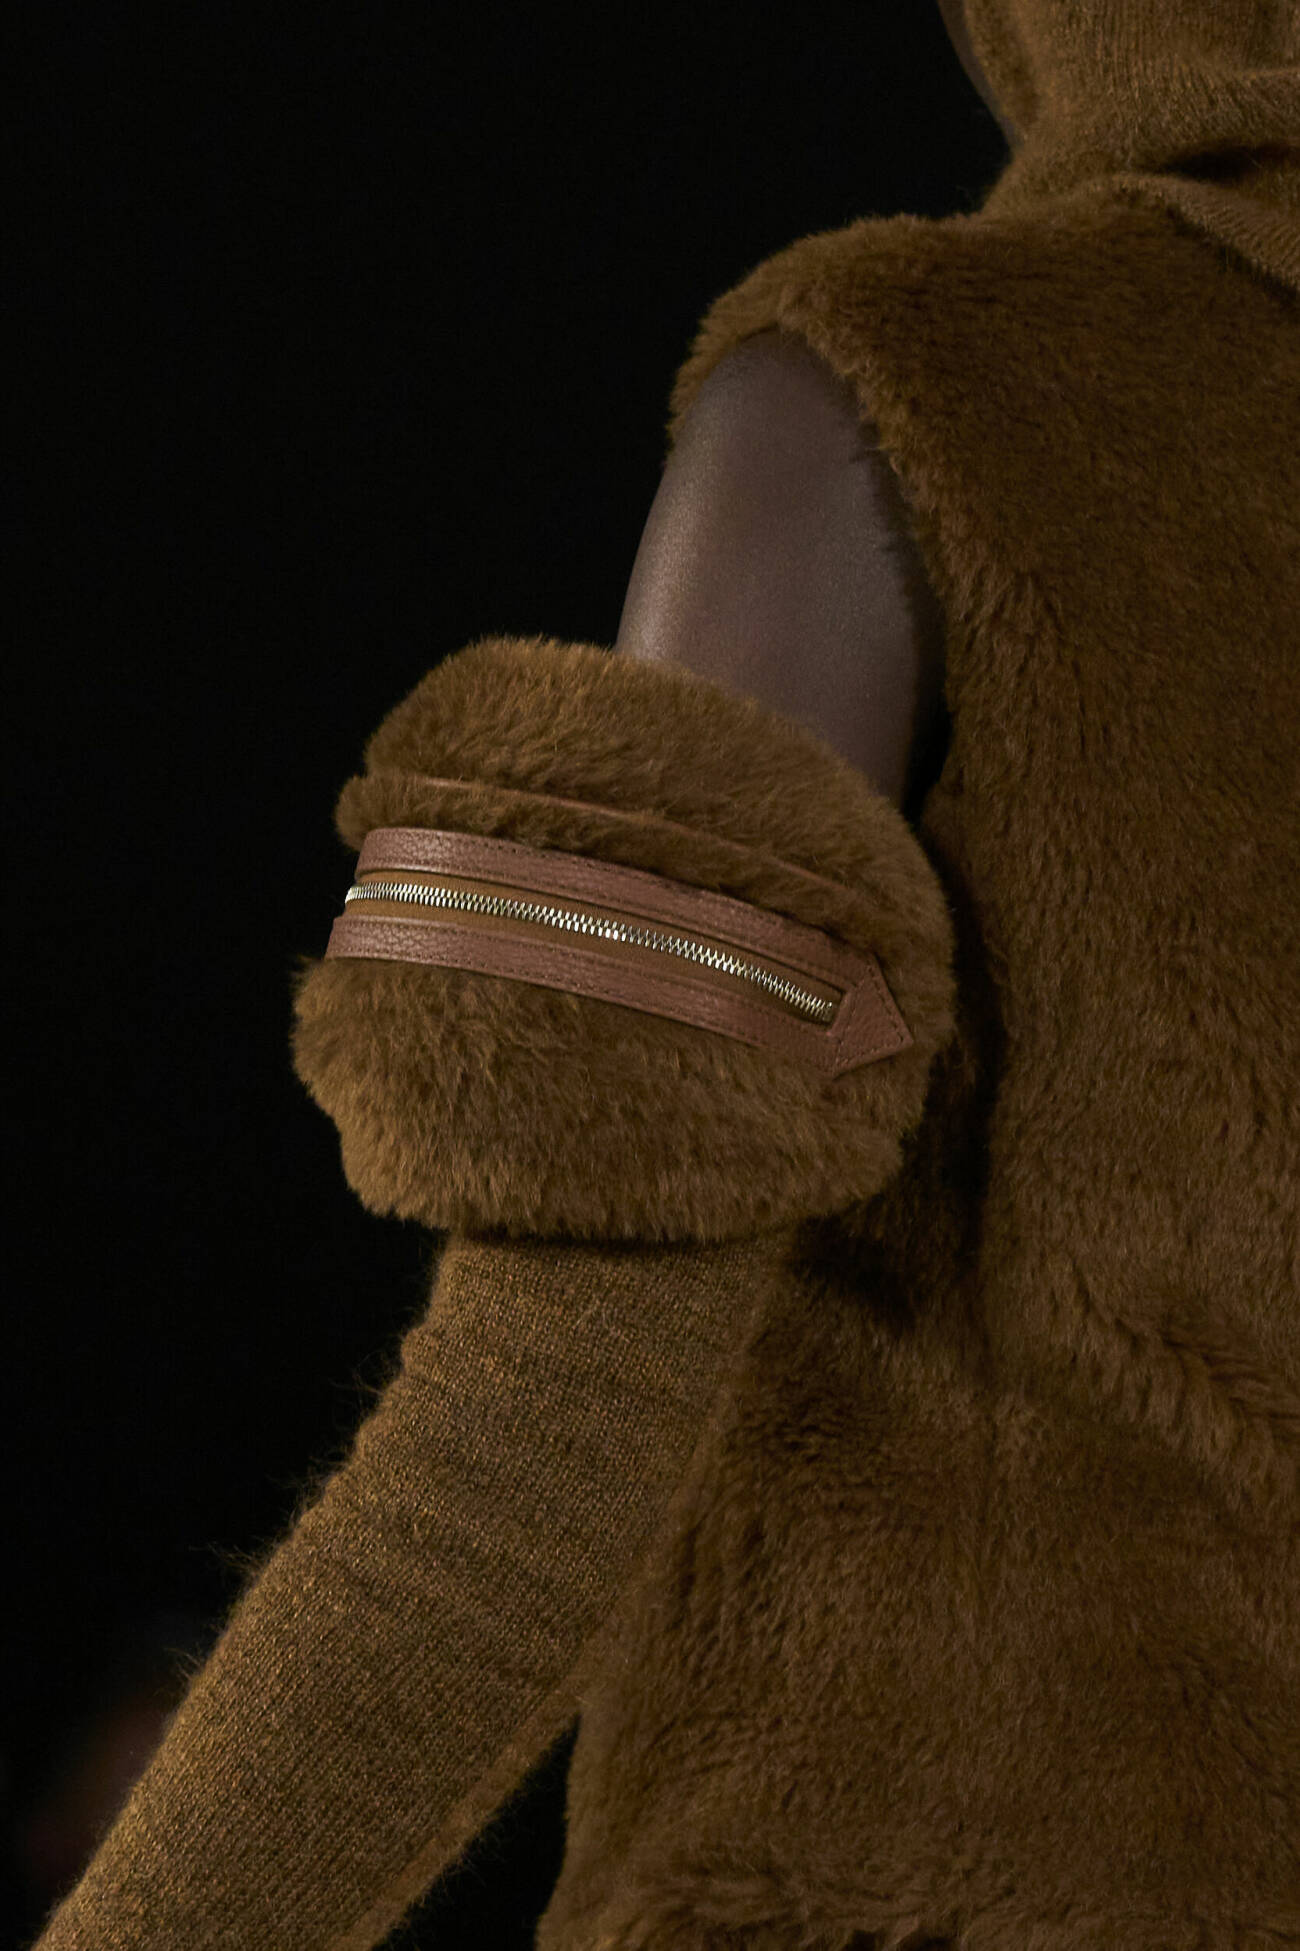 Max mara levererar en mysigt brund teddy variant! Här har modellen väskan högt upp på armen istället för handleden.